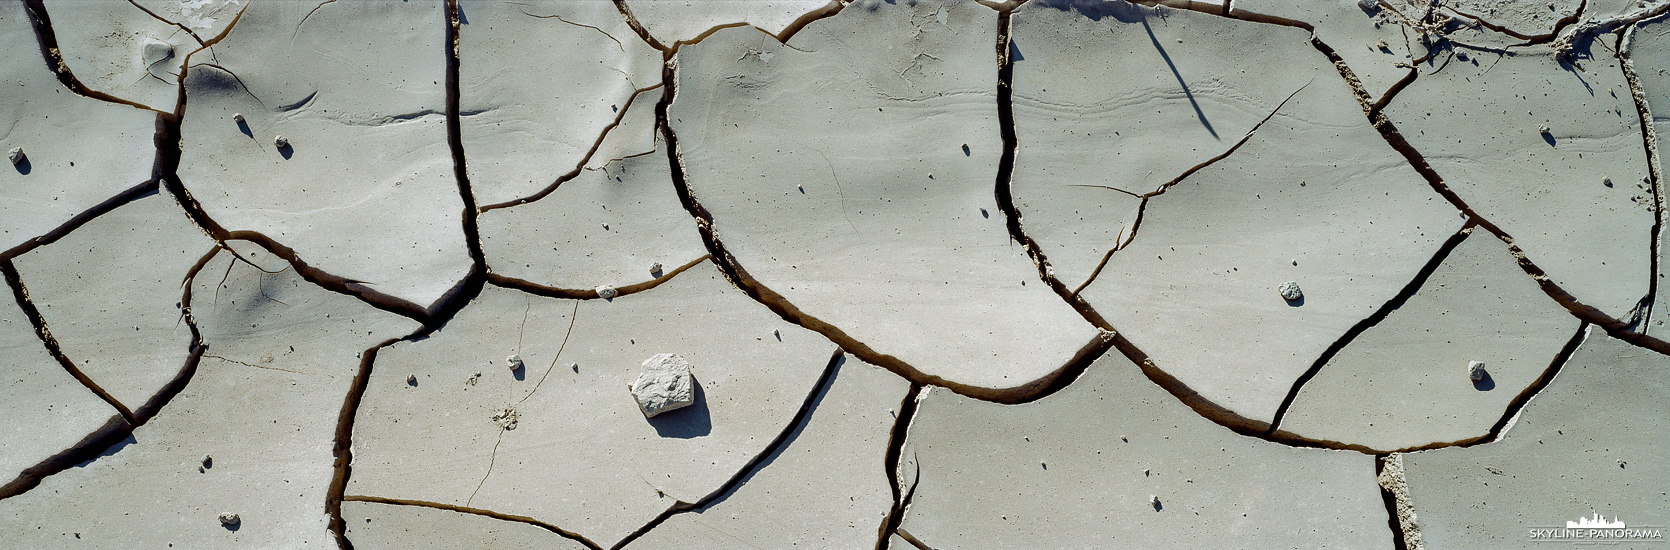 Mudcrack - Death Valley Nationalpark (p_01235)